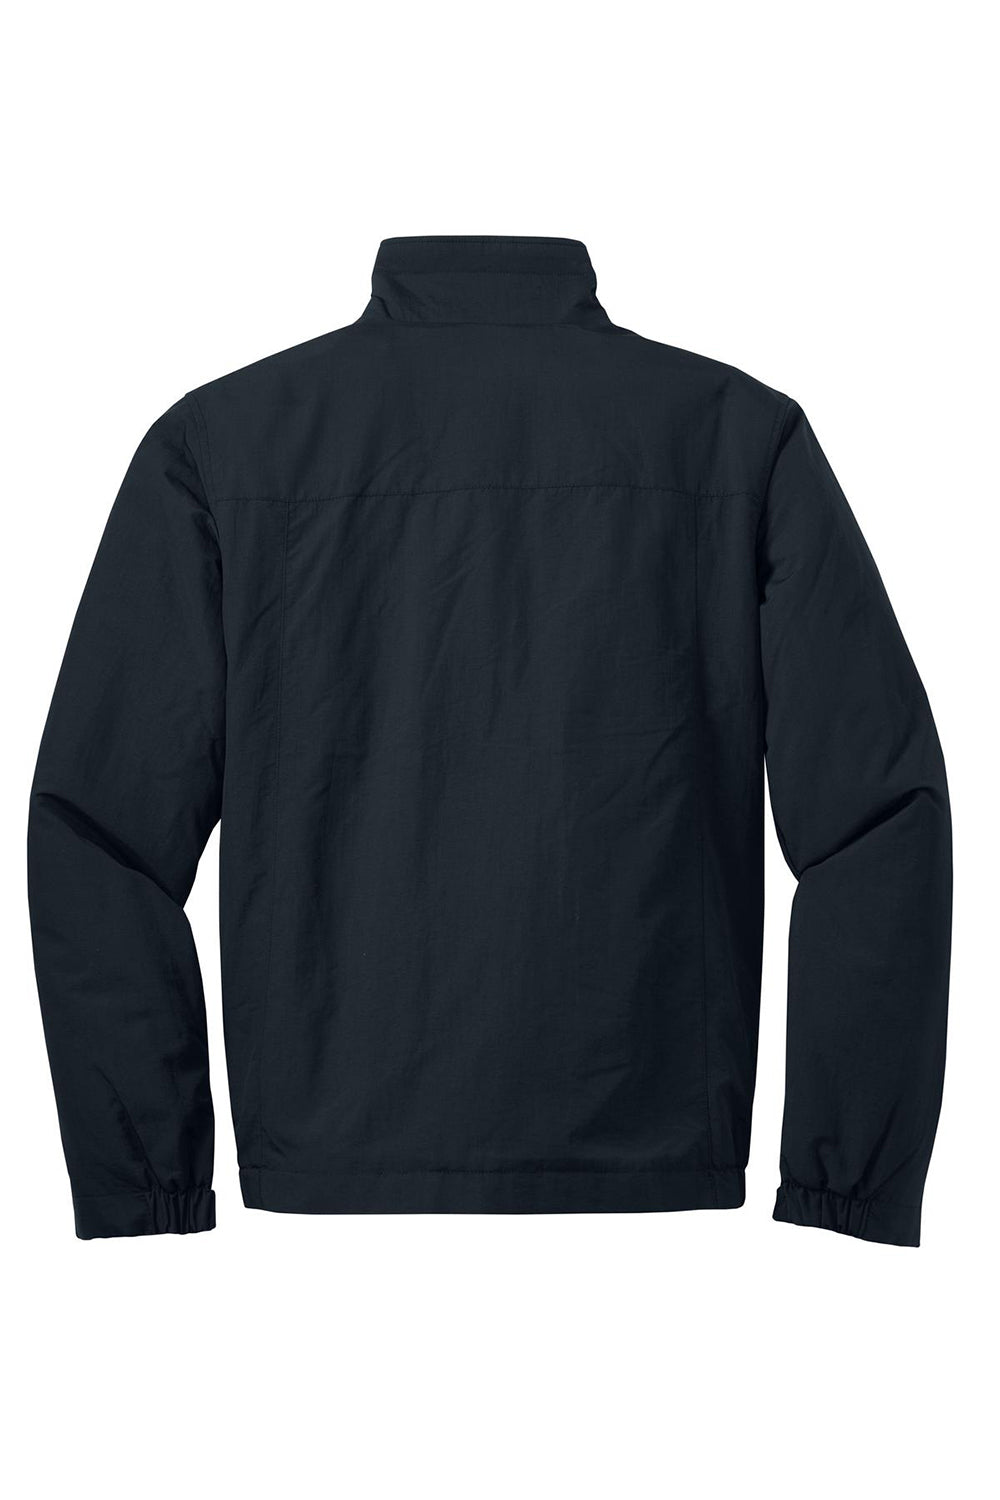 Eddie Bauer EB520 Mens Wind & Water Resistant Full Zip Jacket Black Flat Back